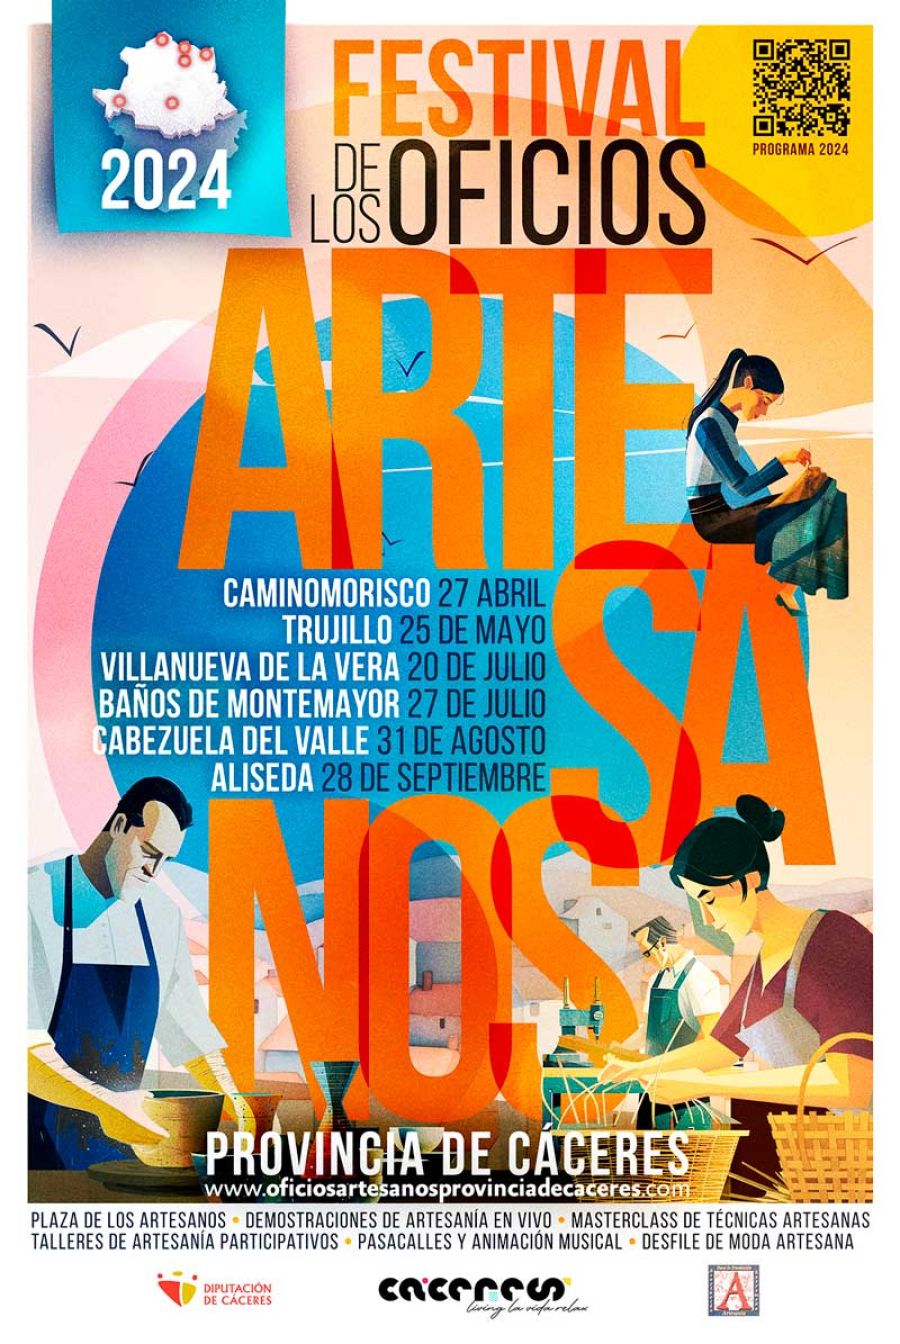 Festival de Oficios Artesanos de la Provincia de Cáceres 2024 | ALISEDA